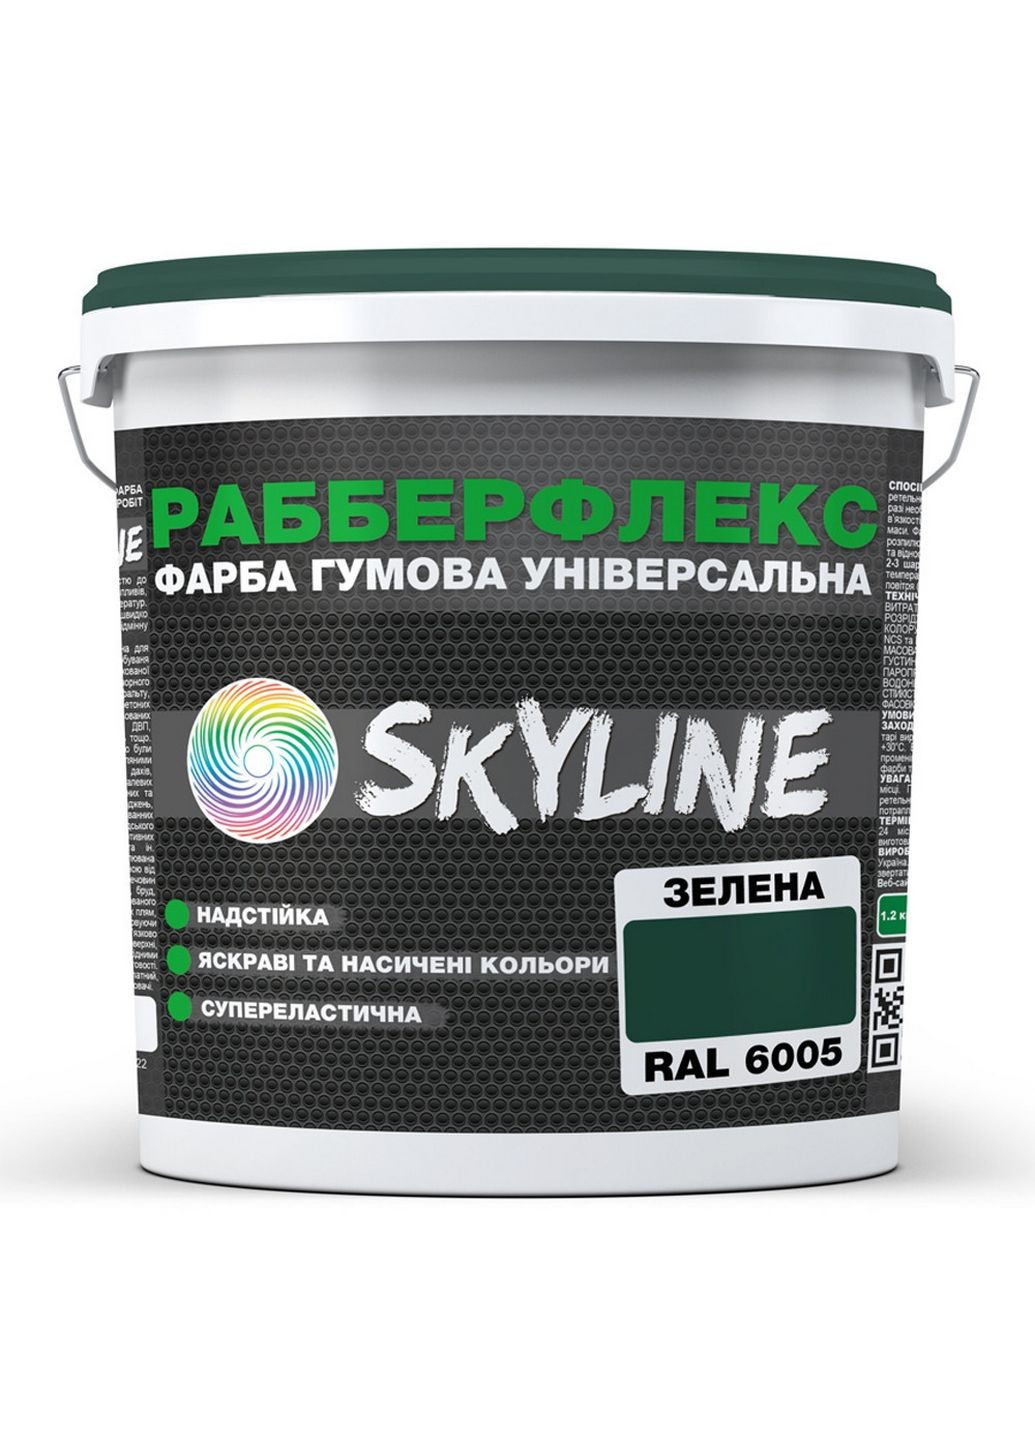 Надстійка фарба гумова супереластична «РабберФлекс» 3,6 кг SkyLine (289460298)